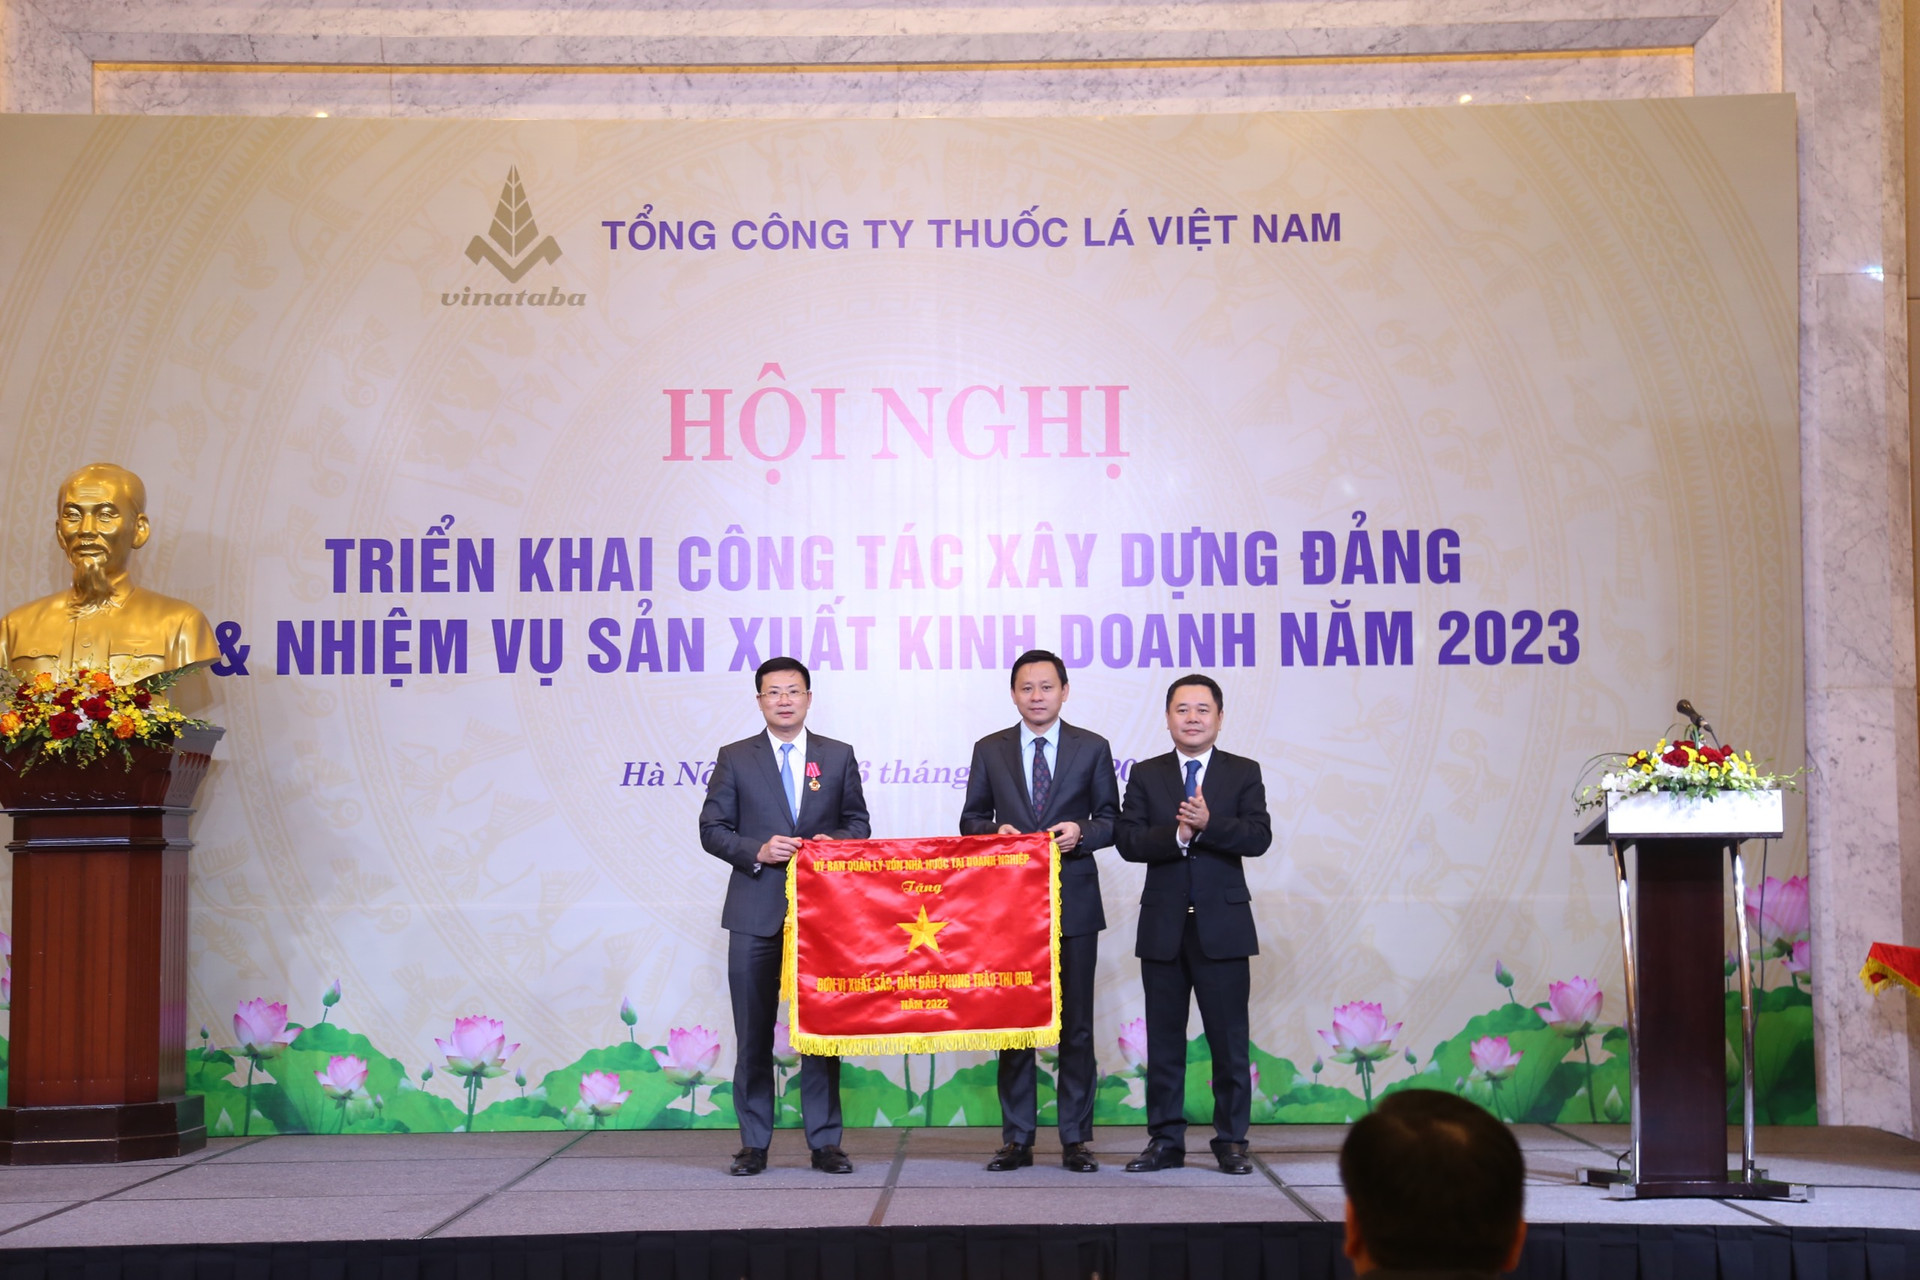 Phó Chủ tịch Ủy ban Quản lý vốn nhà nước tại doanh nghiệp Nguyễn Ngọc Cảnh trao Cờ thi đua của Ủy ban cho Vinataba vì có thành tích xuất sắc, dẫn đầu phong trào thi đua năm 2022.